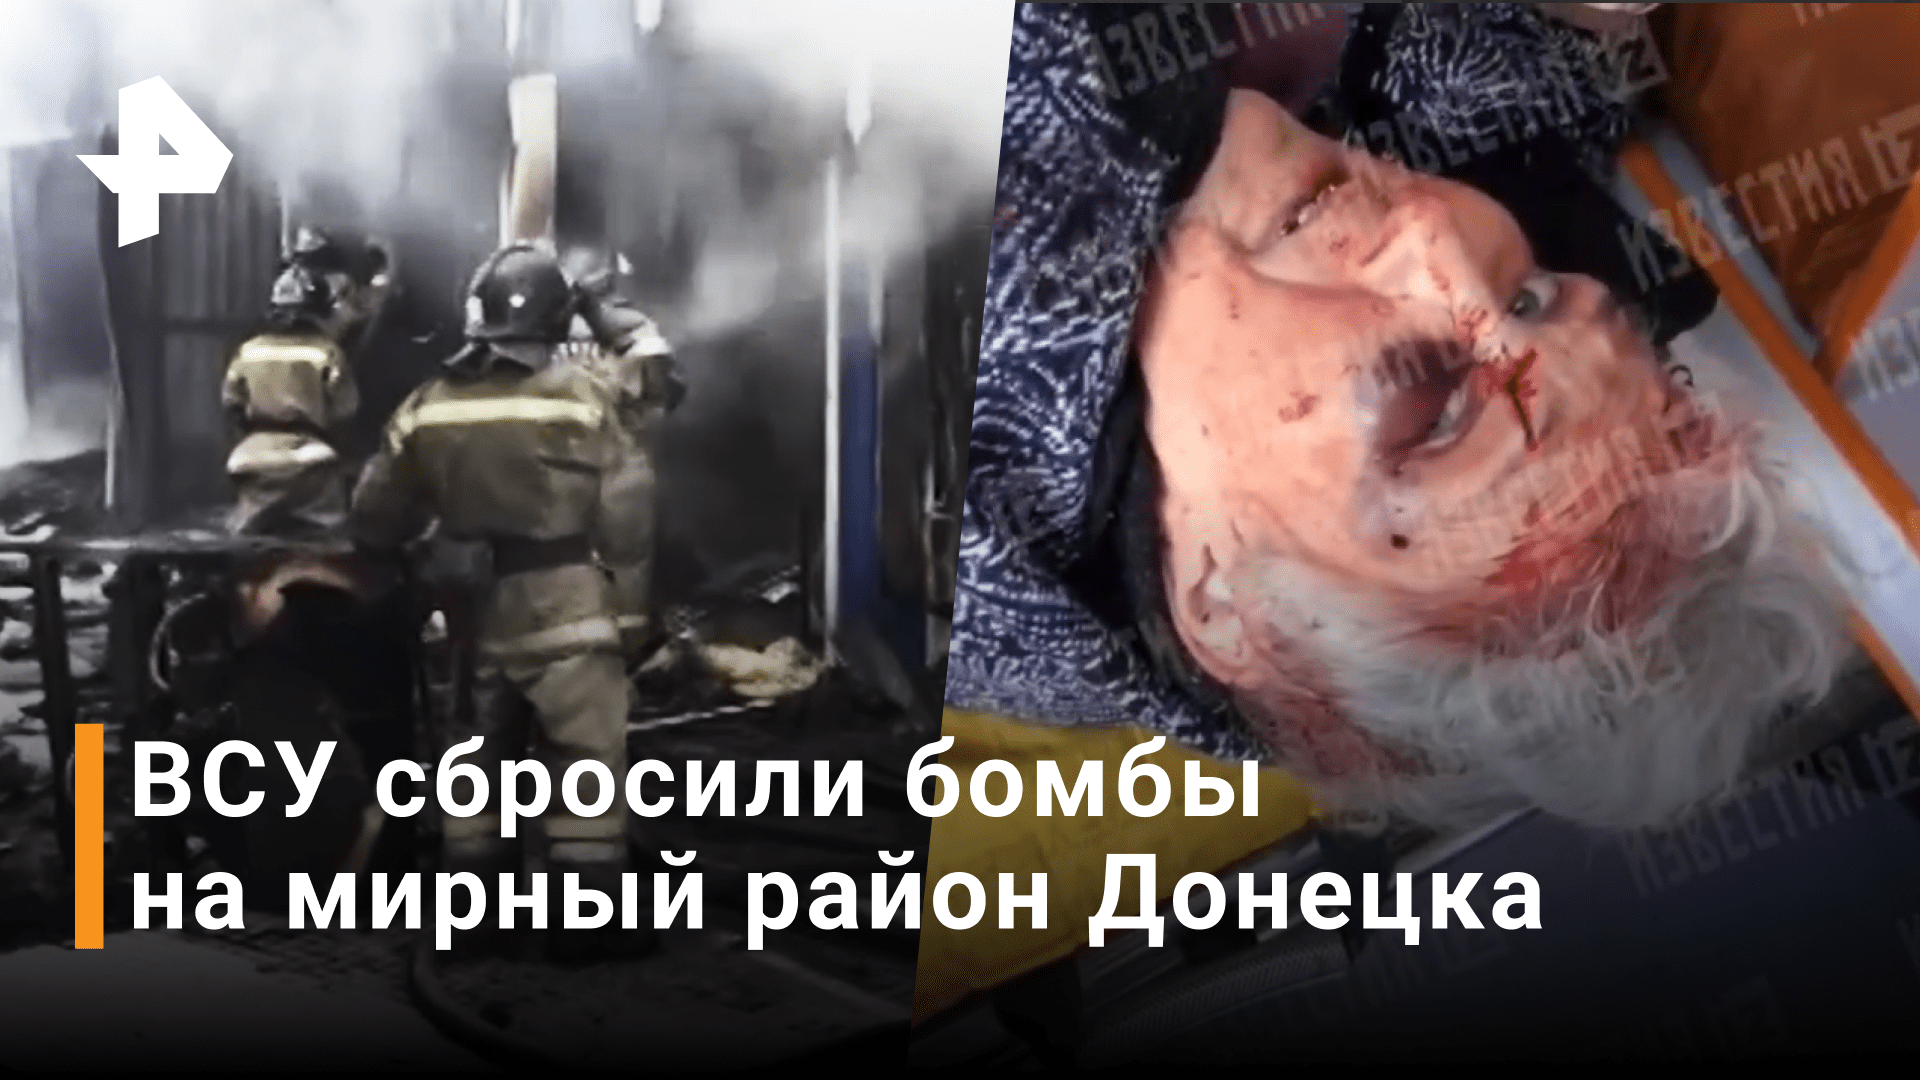 Пять человек погибли: ВСУ нанесли ракетный удар по мирному району Донецка / Новости РЕН